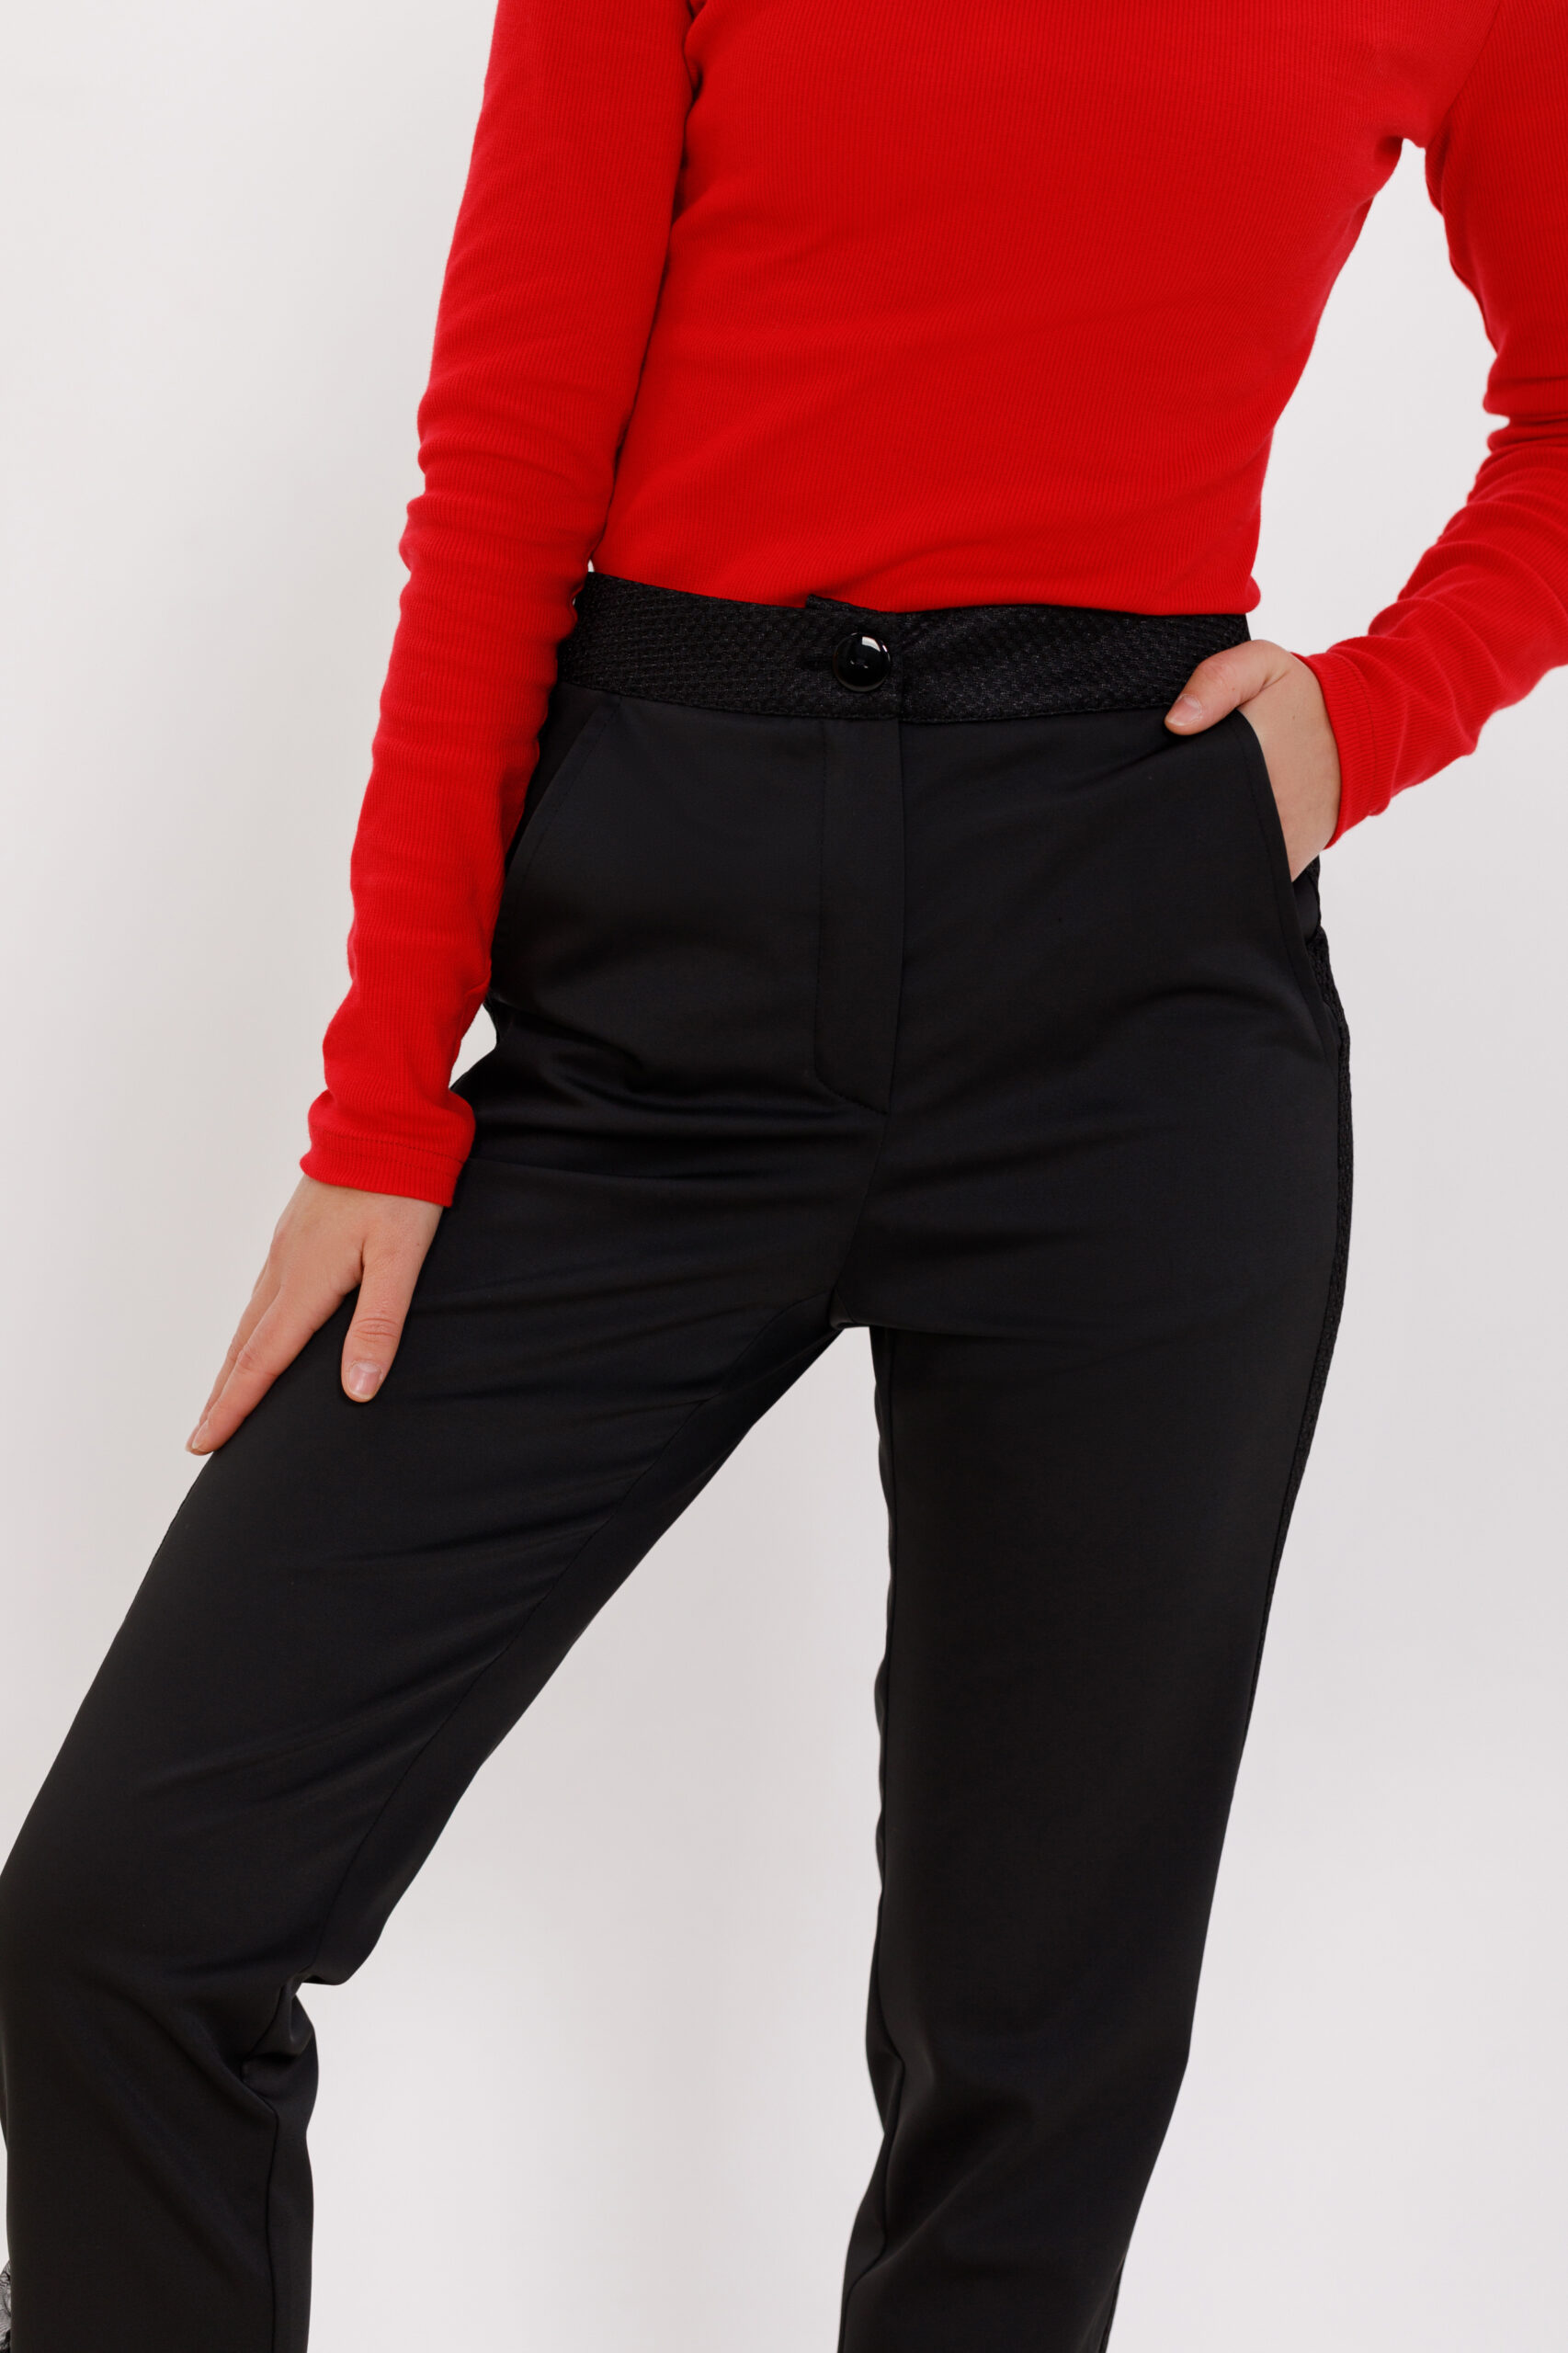 Pantalon DAVID elegant negru din tercot cu volane. Materiale naturale, design unicat, cu broderie si aplicatii handmade